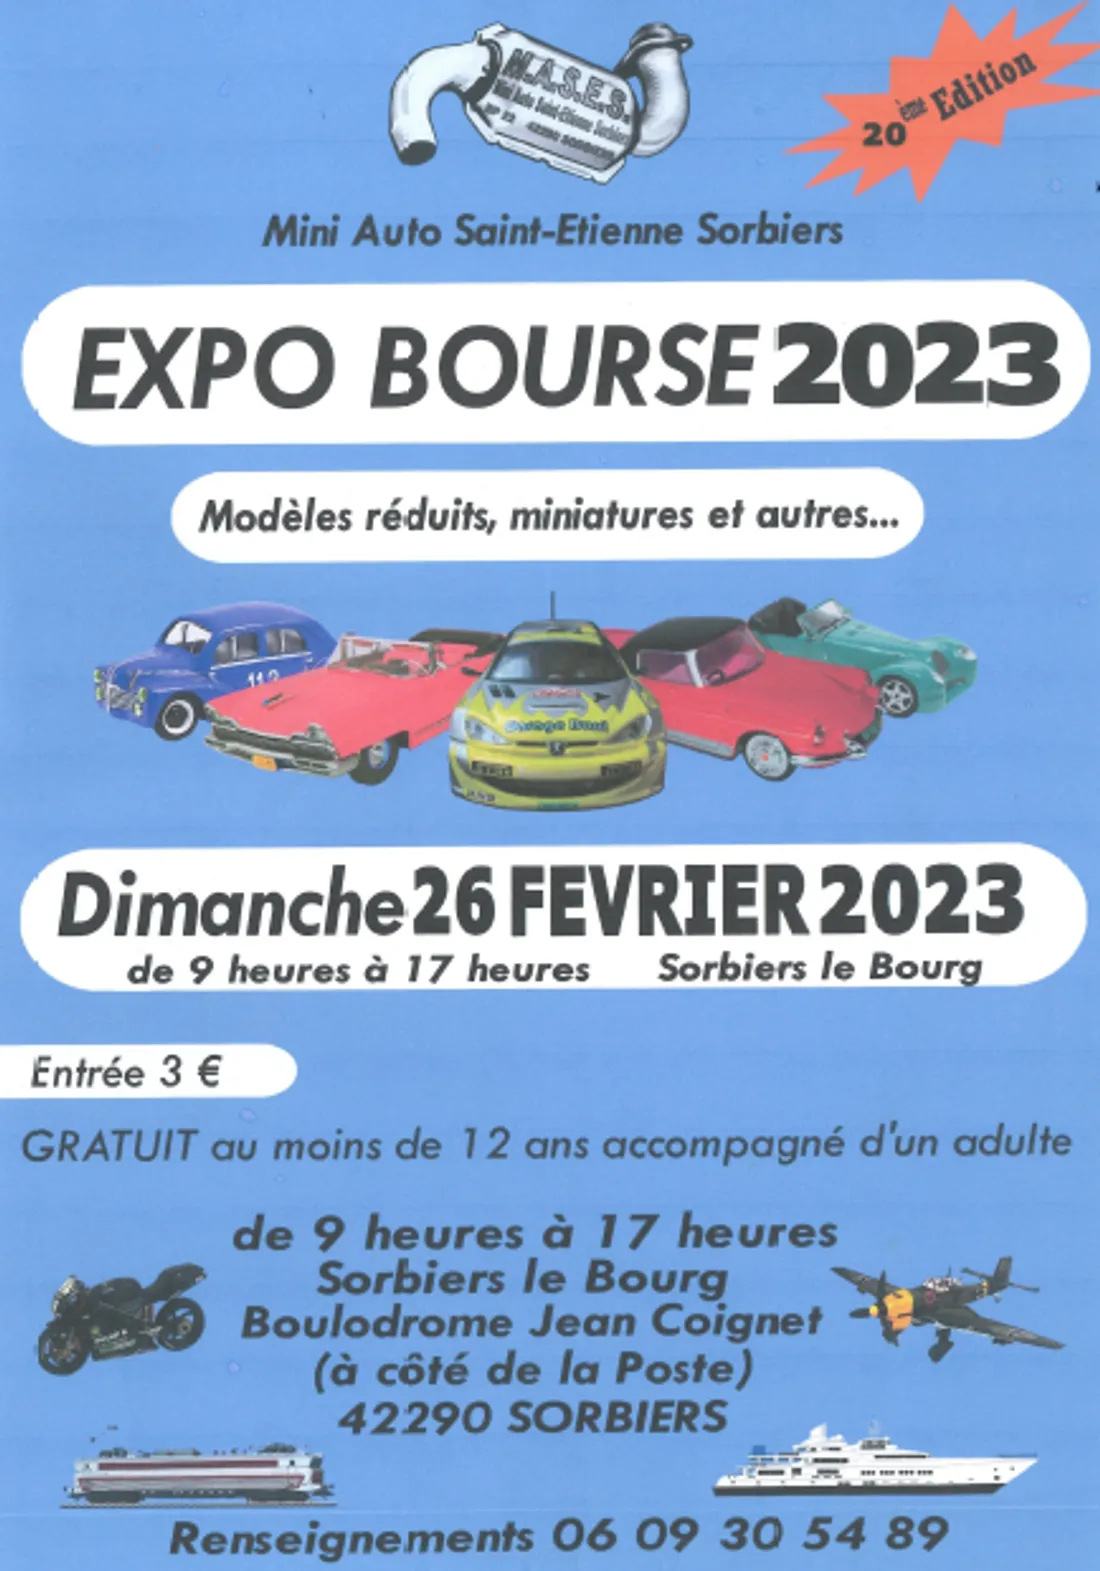 Expo Bourse 2023